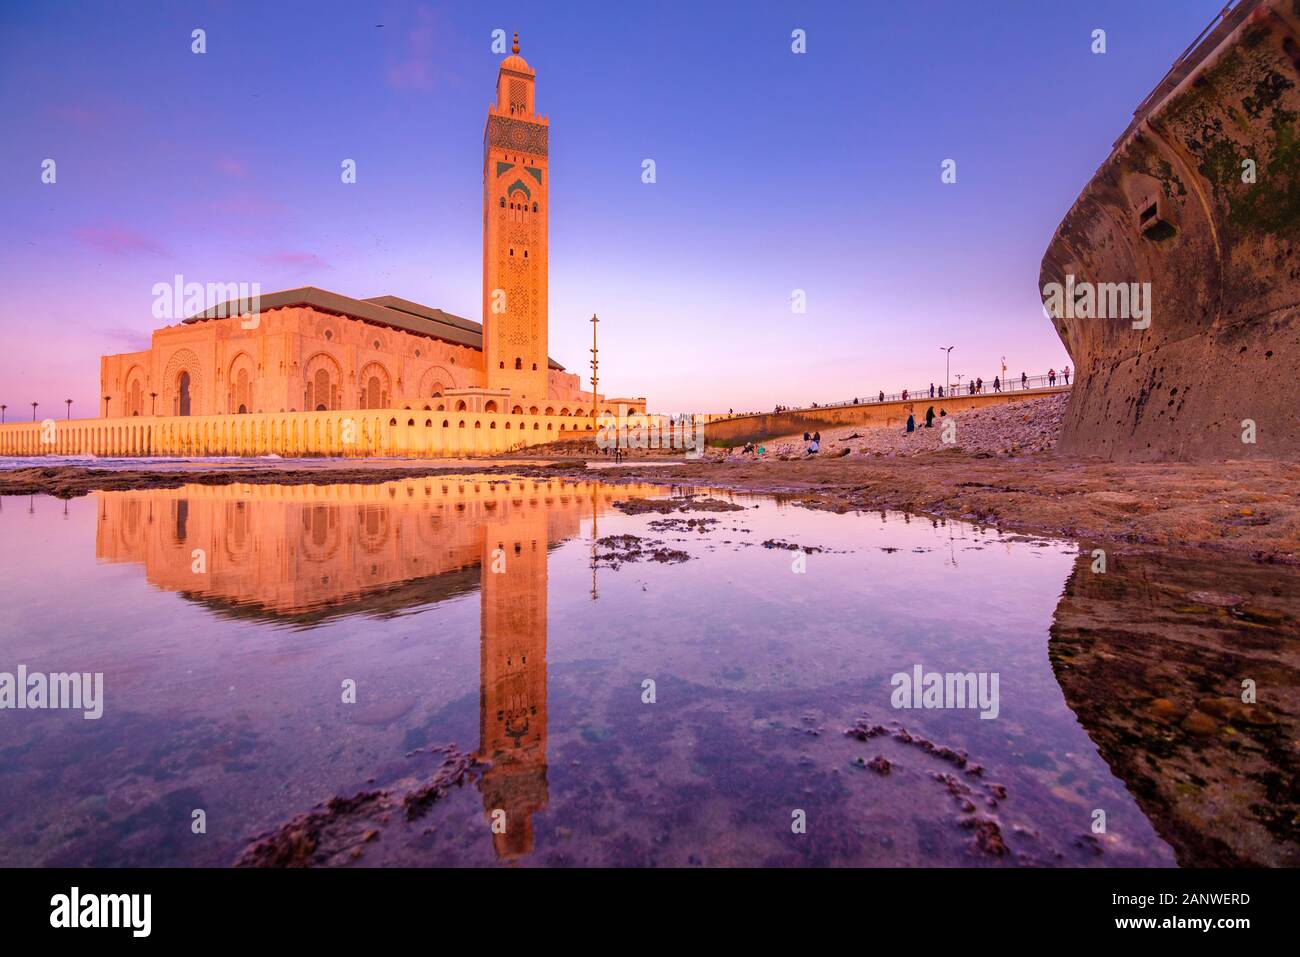 La Mosquée Hassan II est une mosquée de Casablanca, au Maroc. C'est la plus grande mosquée du Maroc avec le minaret le plus haut au monde. Banque D'Images